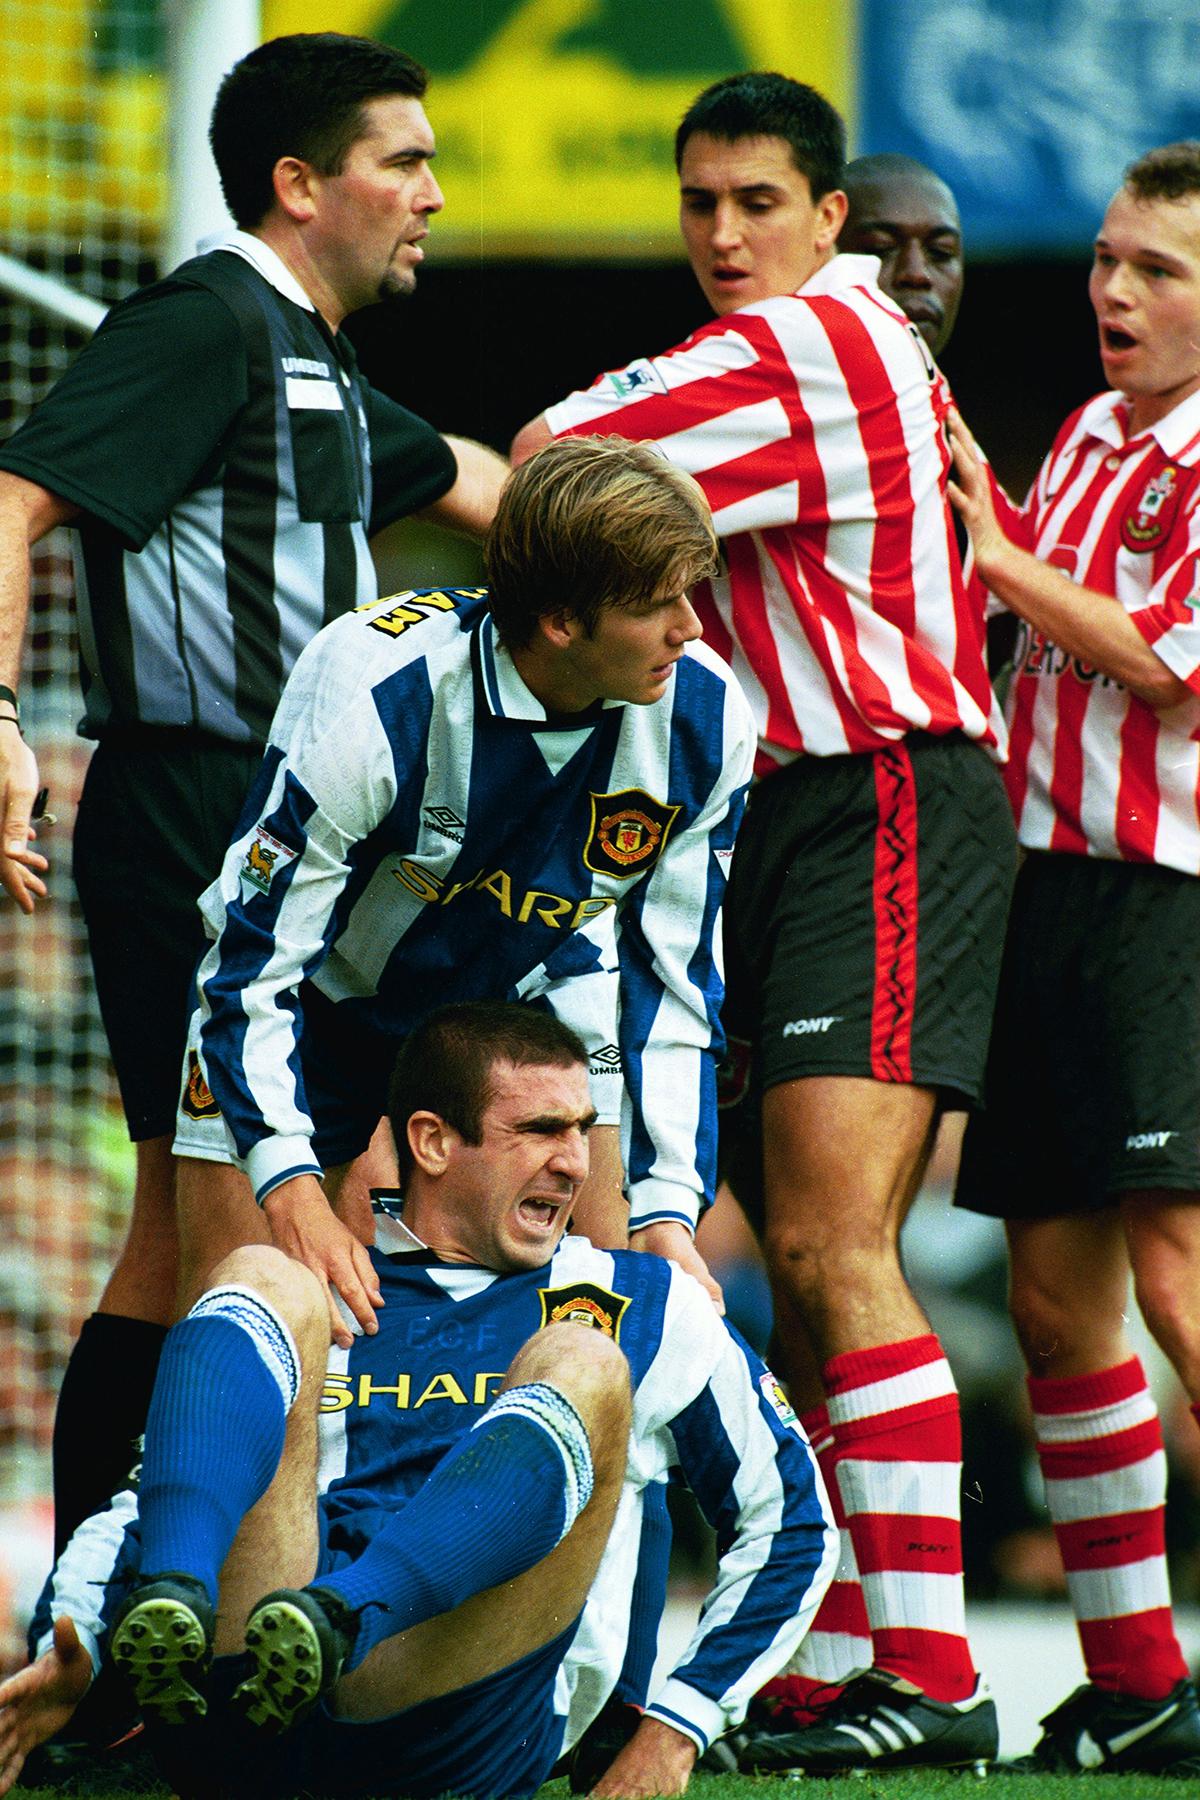 Premiership 1996/97 - Saints 6 Man Utd 3